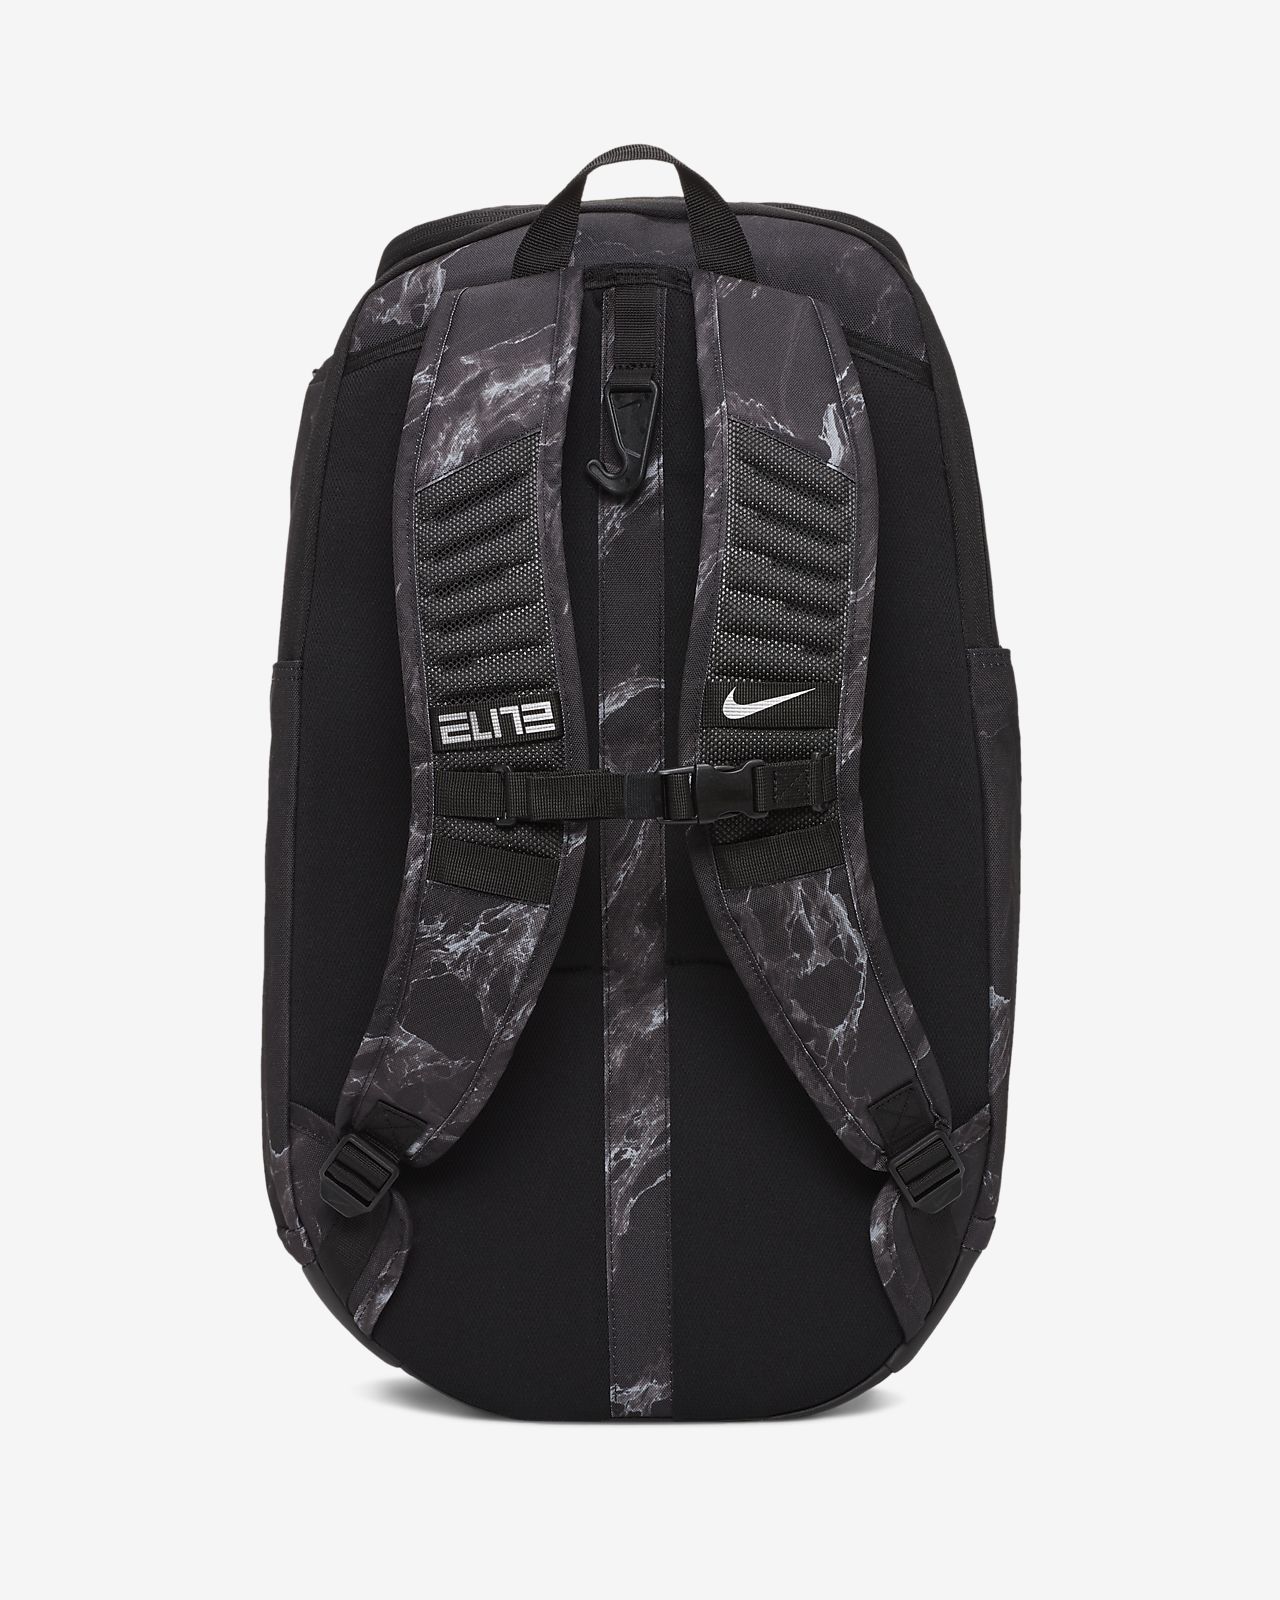 eastbay nike backpack discount 8b312 50bbd